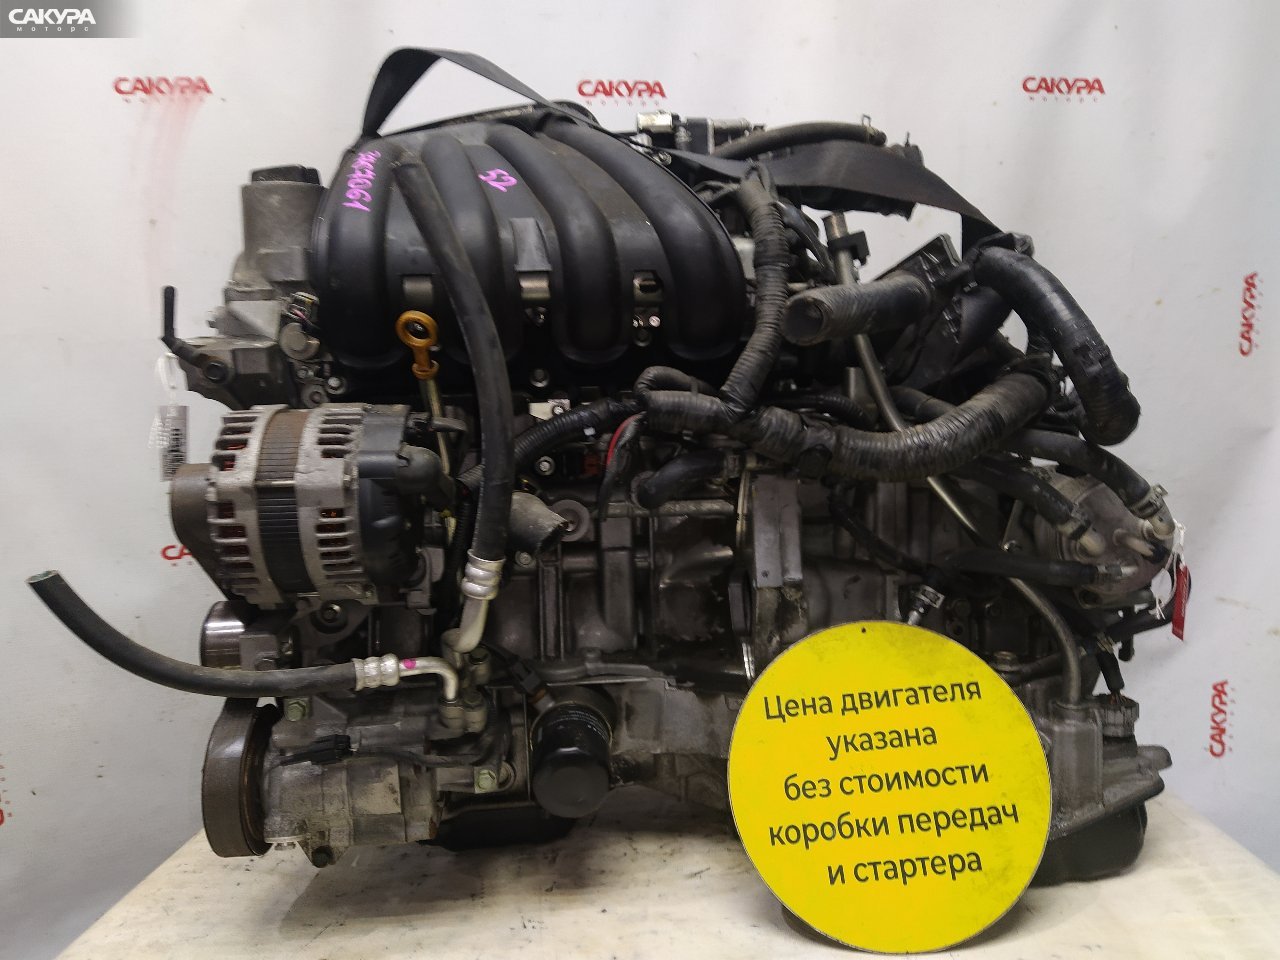 Двигатель Nissan Note E11 HR15DE: купить в Сакура Красноярск.